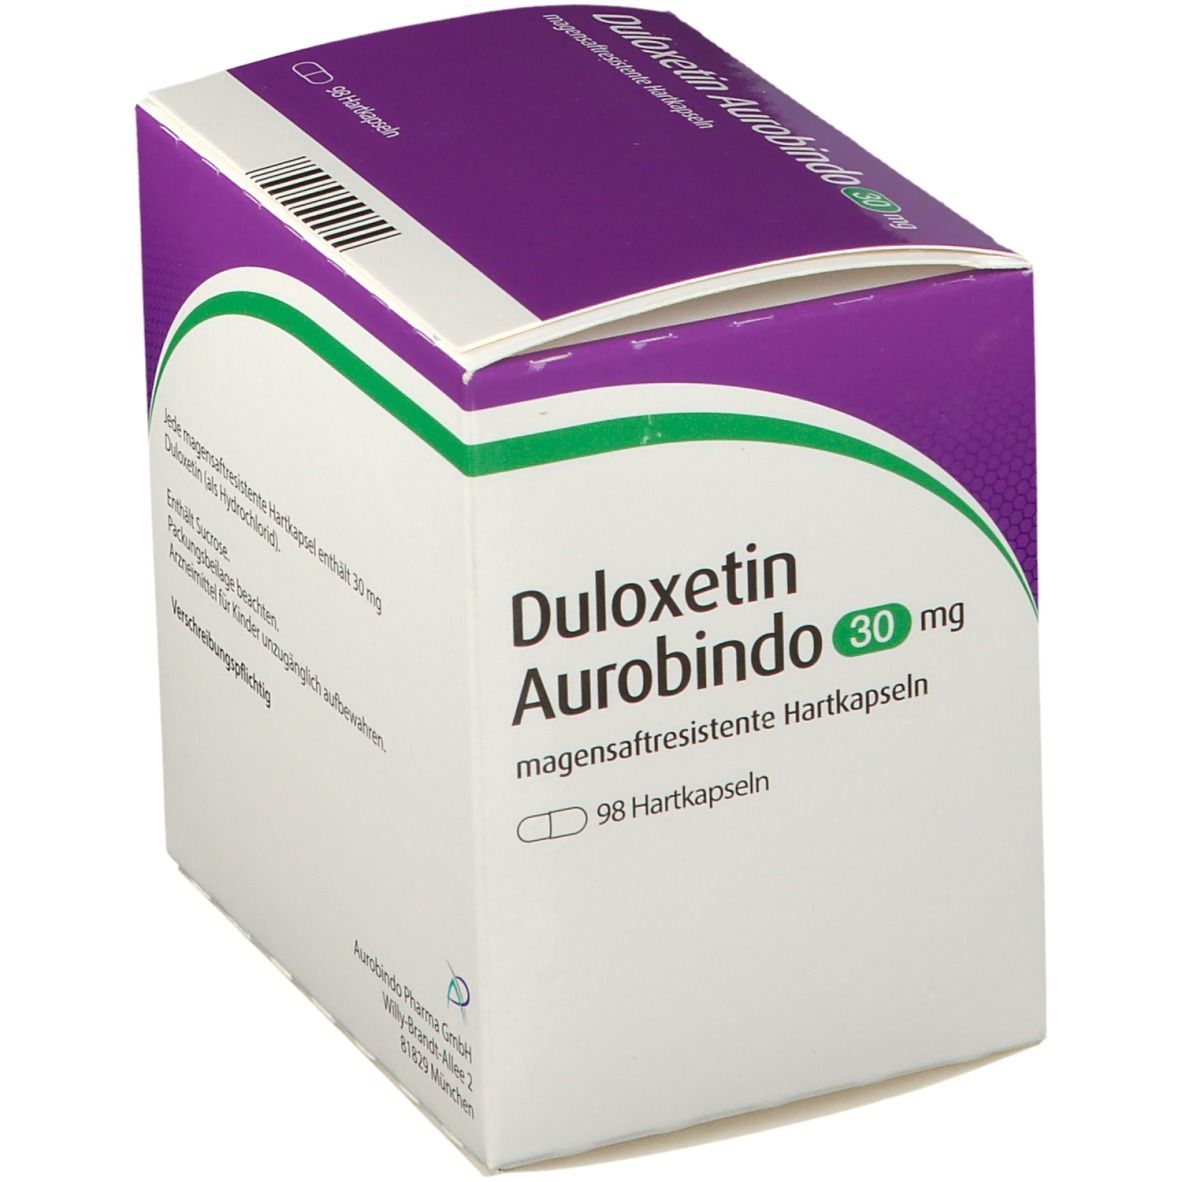 Duloxetin Aurobindo 30 mg